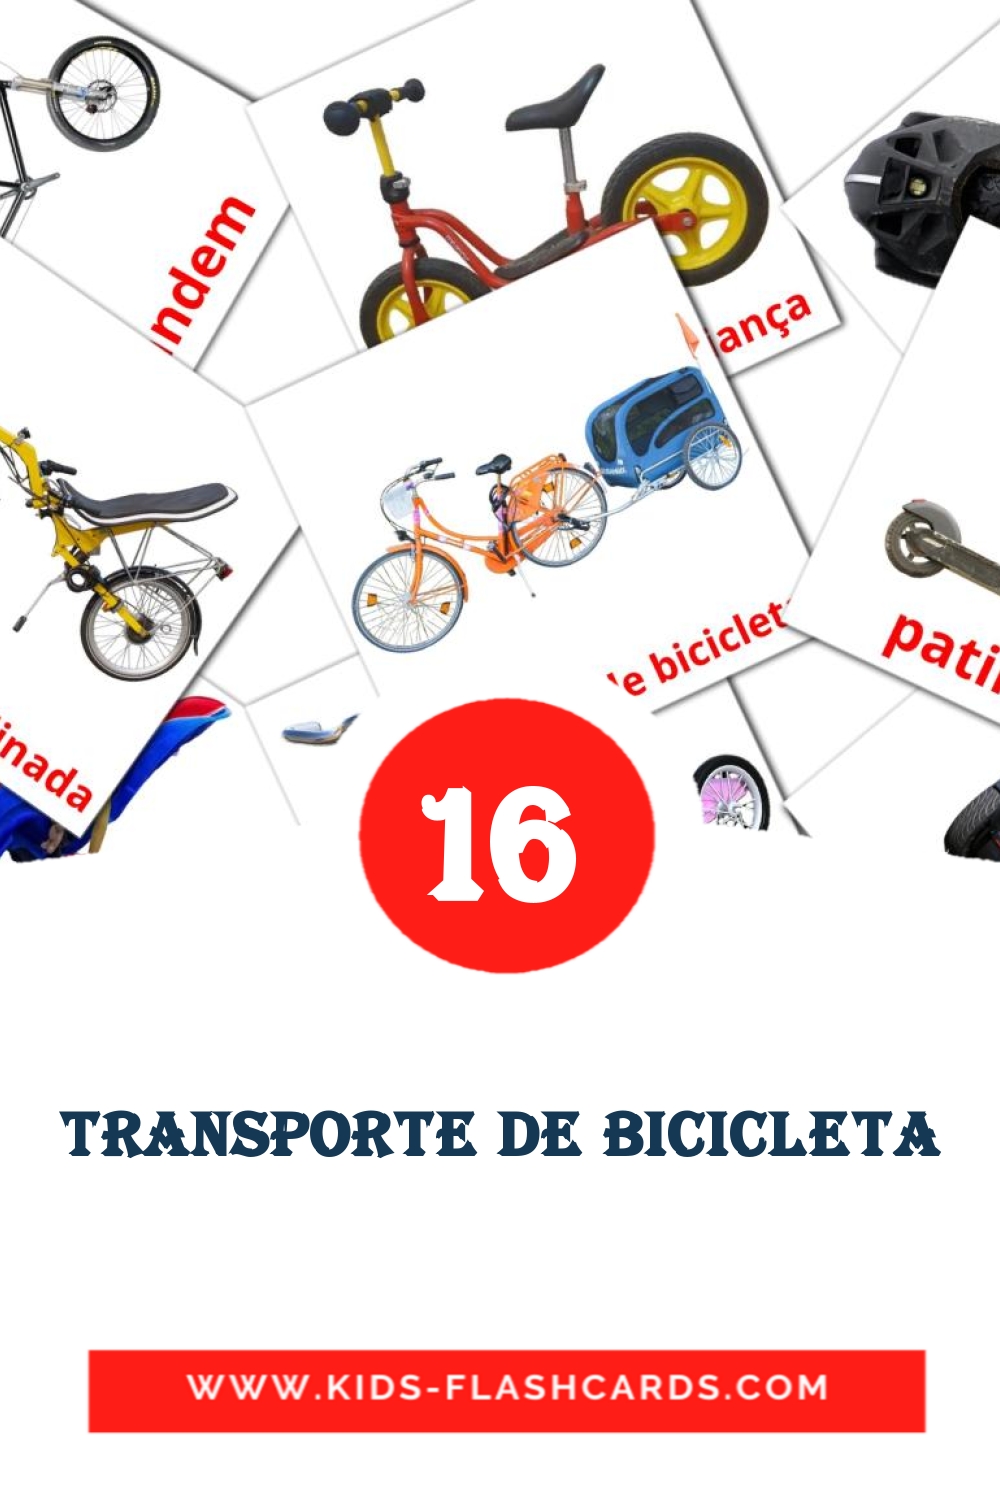 16 Transporte de Bicicleta fotokaarten voor kleuters in het portugees